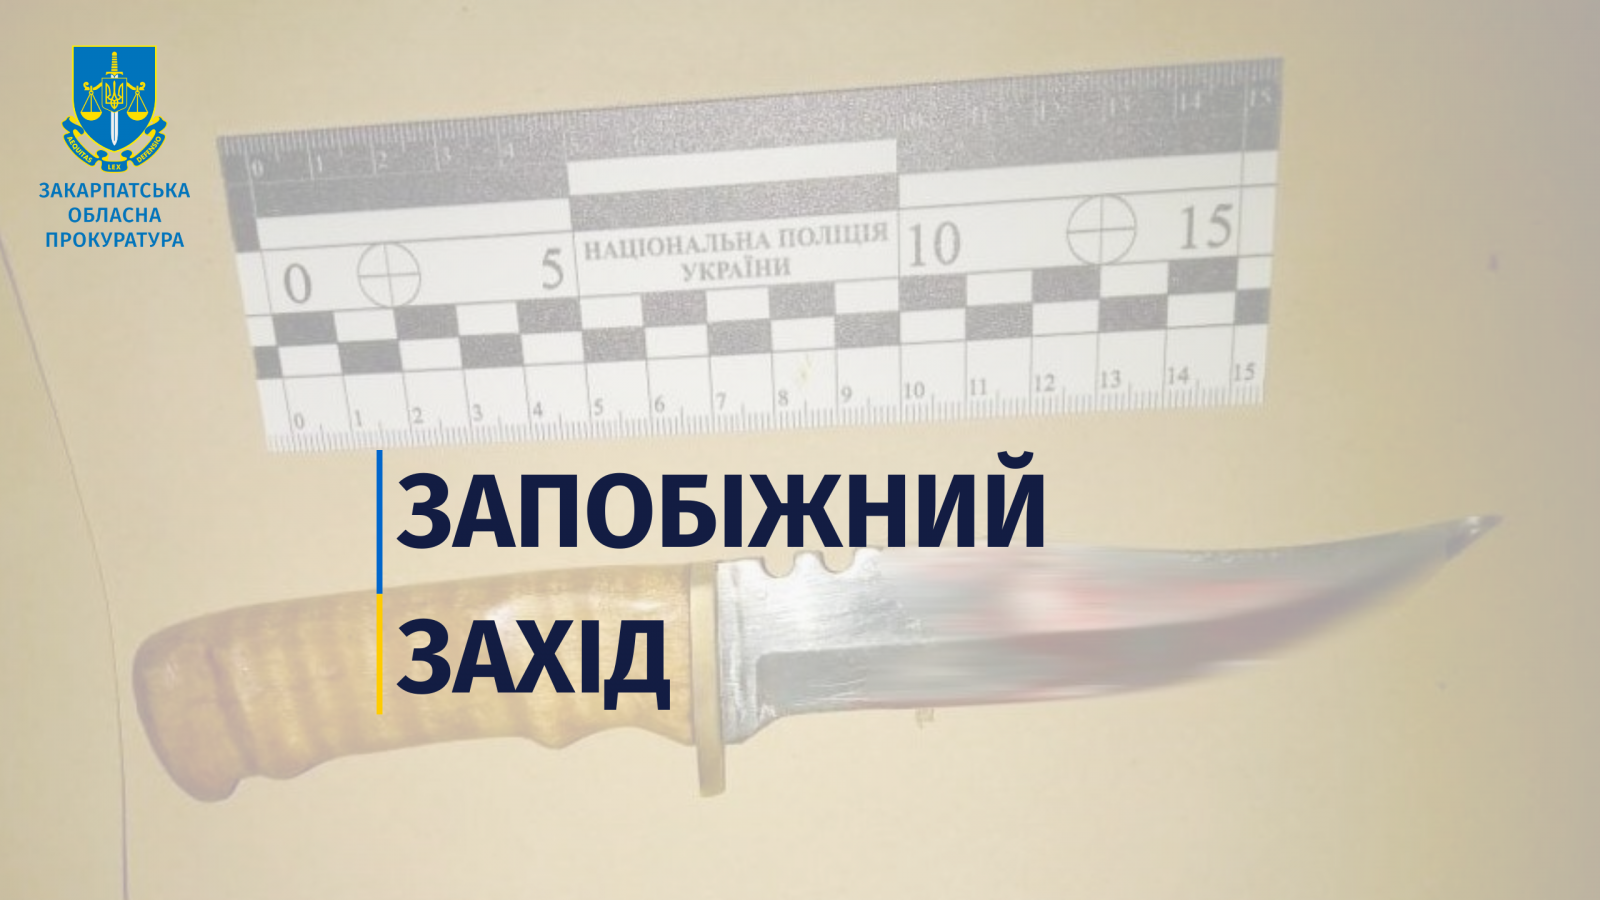 Поранення, що призвело до смерті мешканця Ужгородщини: підозрюваного взяли під варту без застави